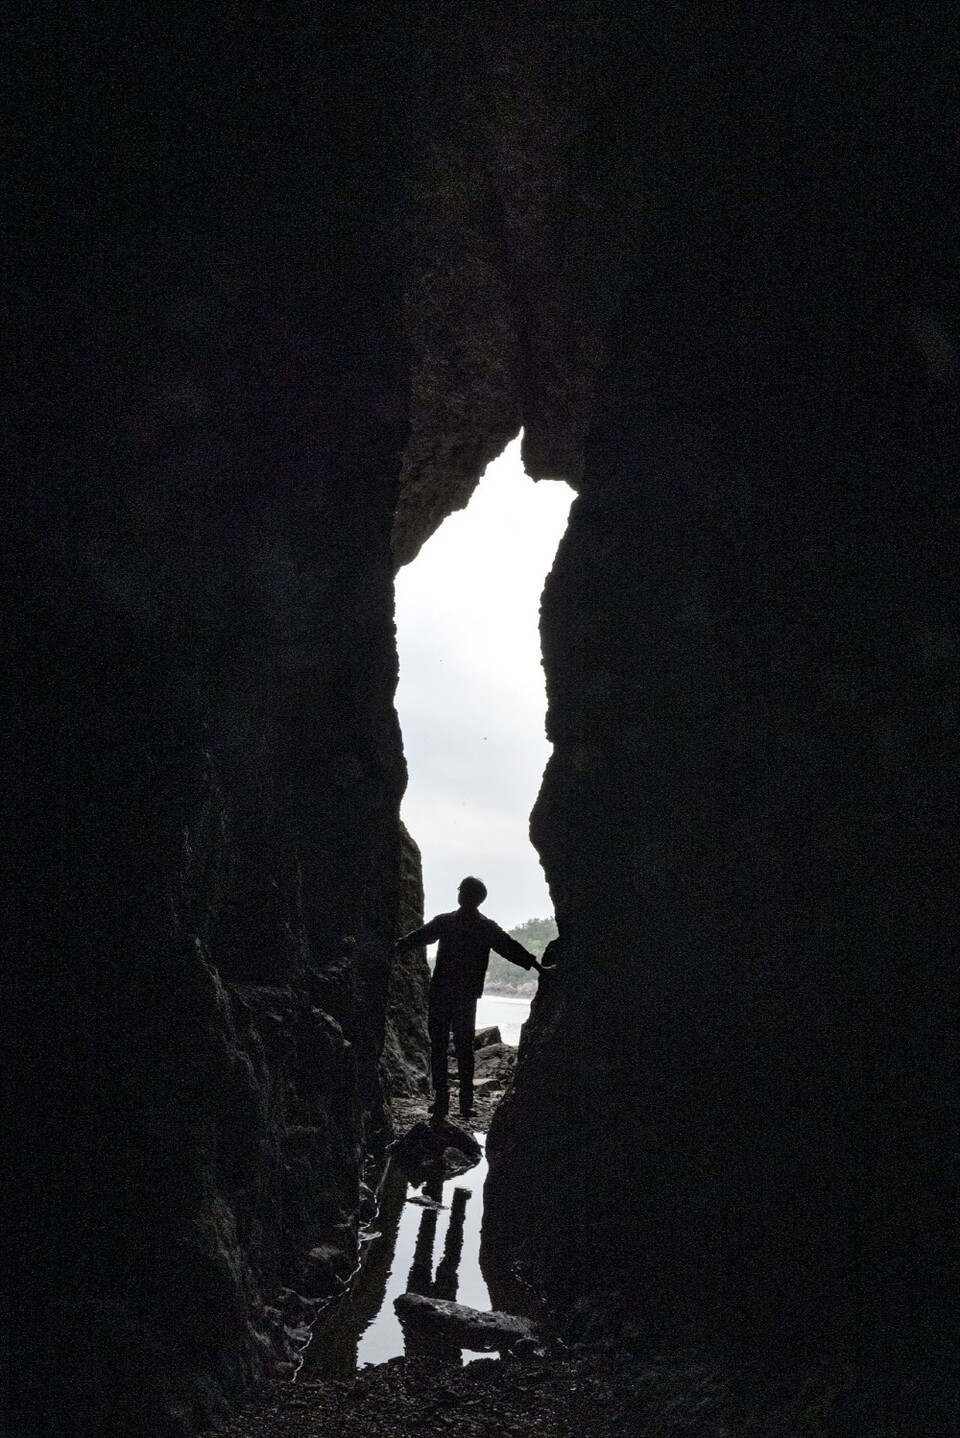 관통형 동굴인 용난굴은 어머리해변의 보물 같은 스폿이다